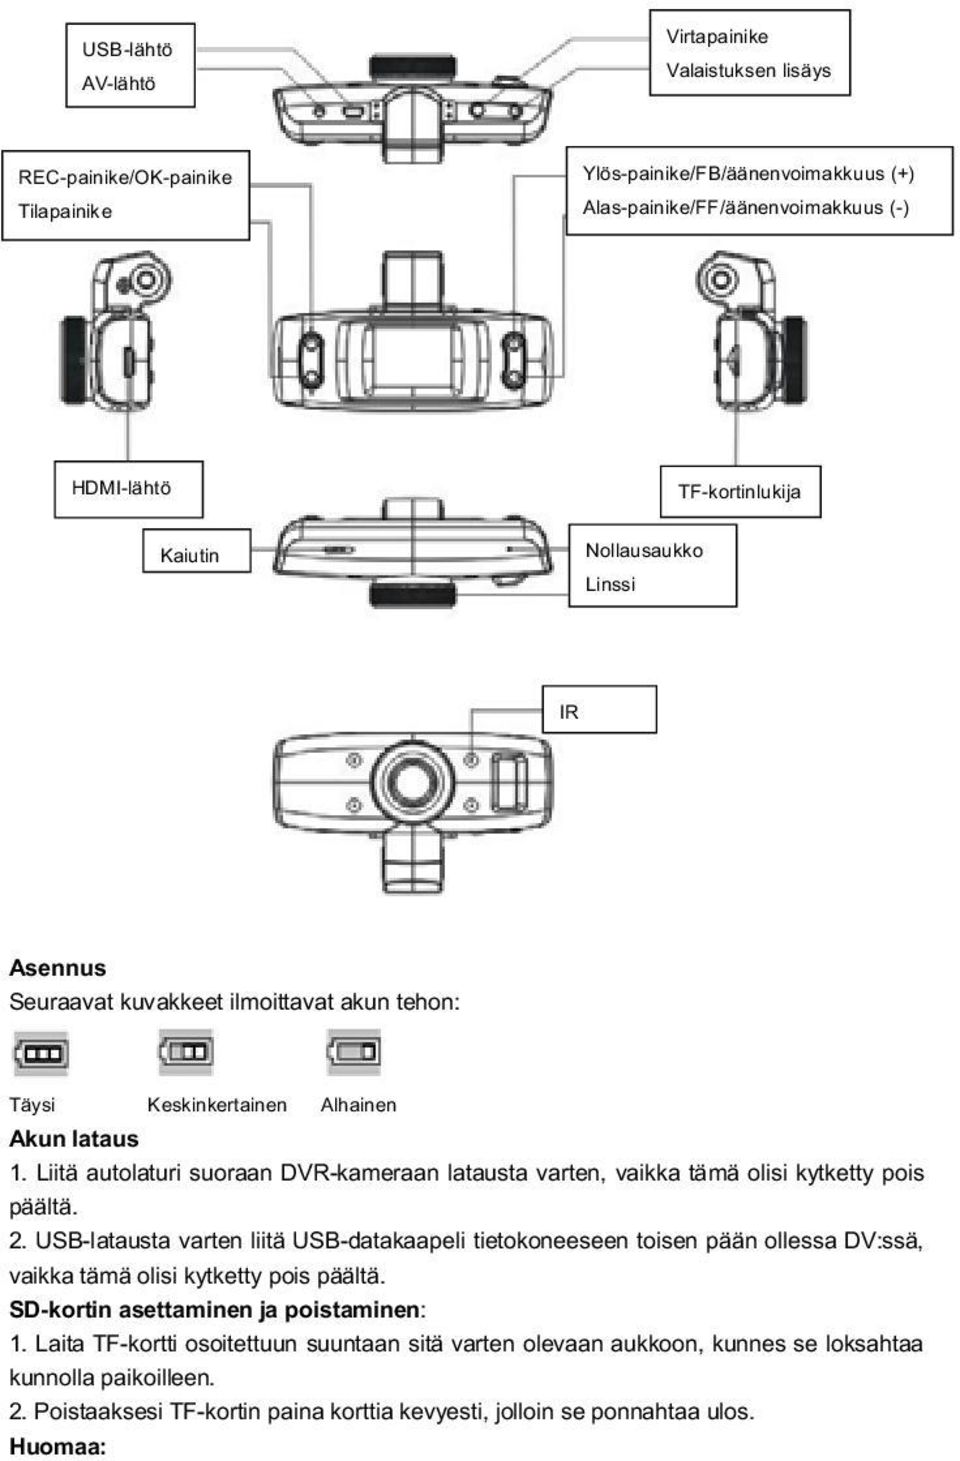 Liit autolaturi suoraan DVR-kameraan latausta varten, vaikka t m olisi kytketty pois p lt. 2.